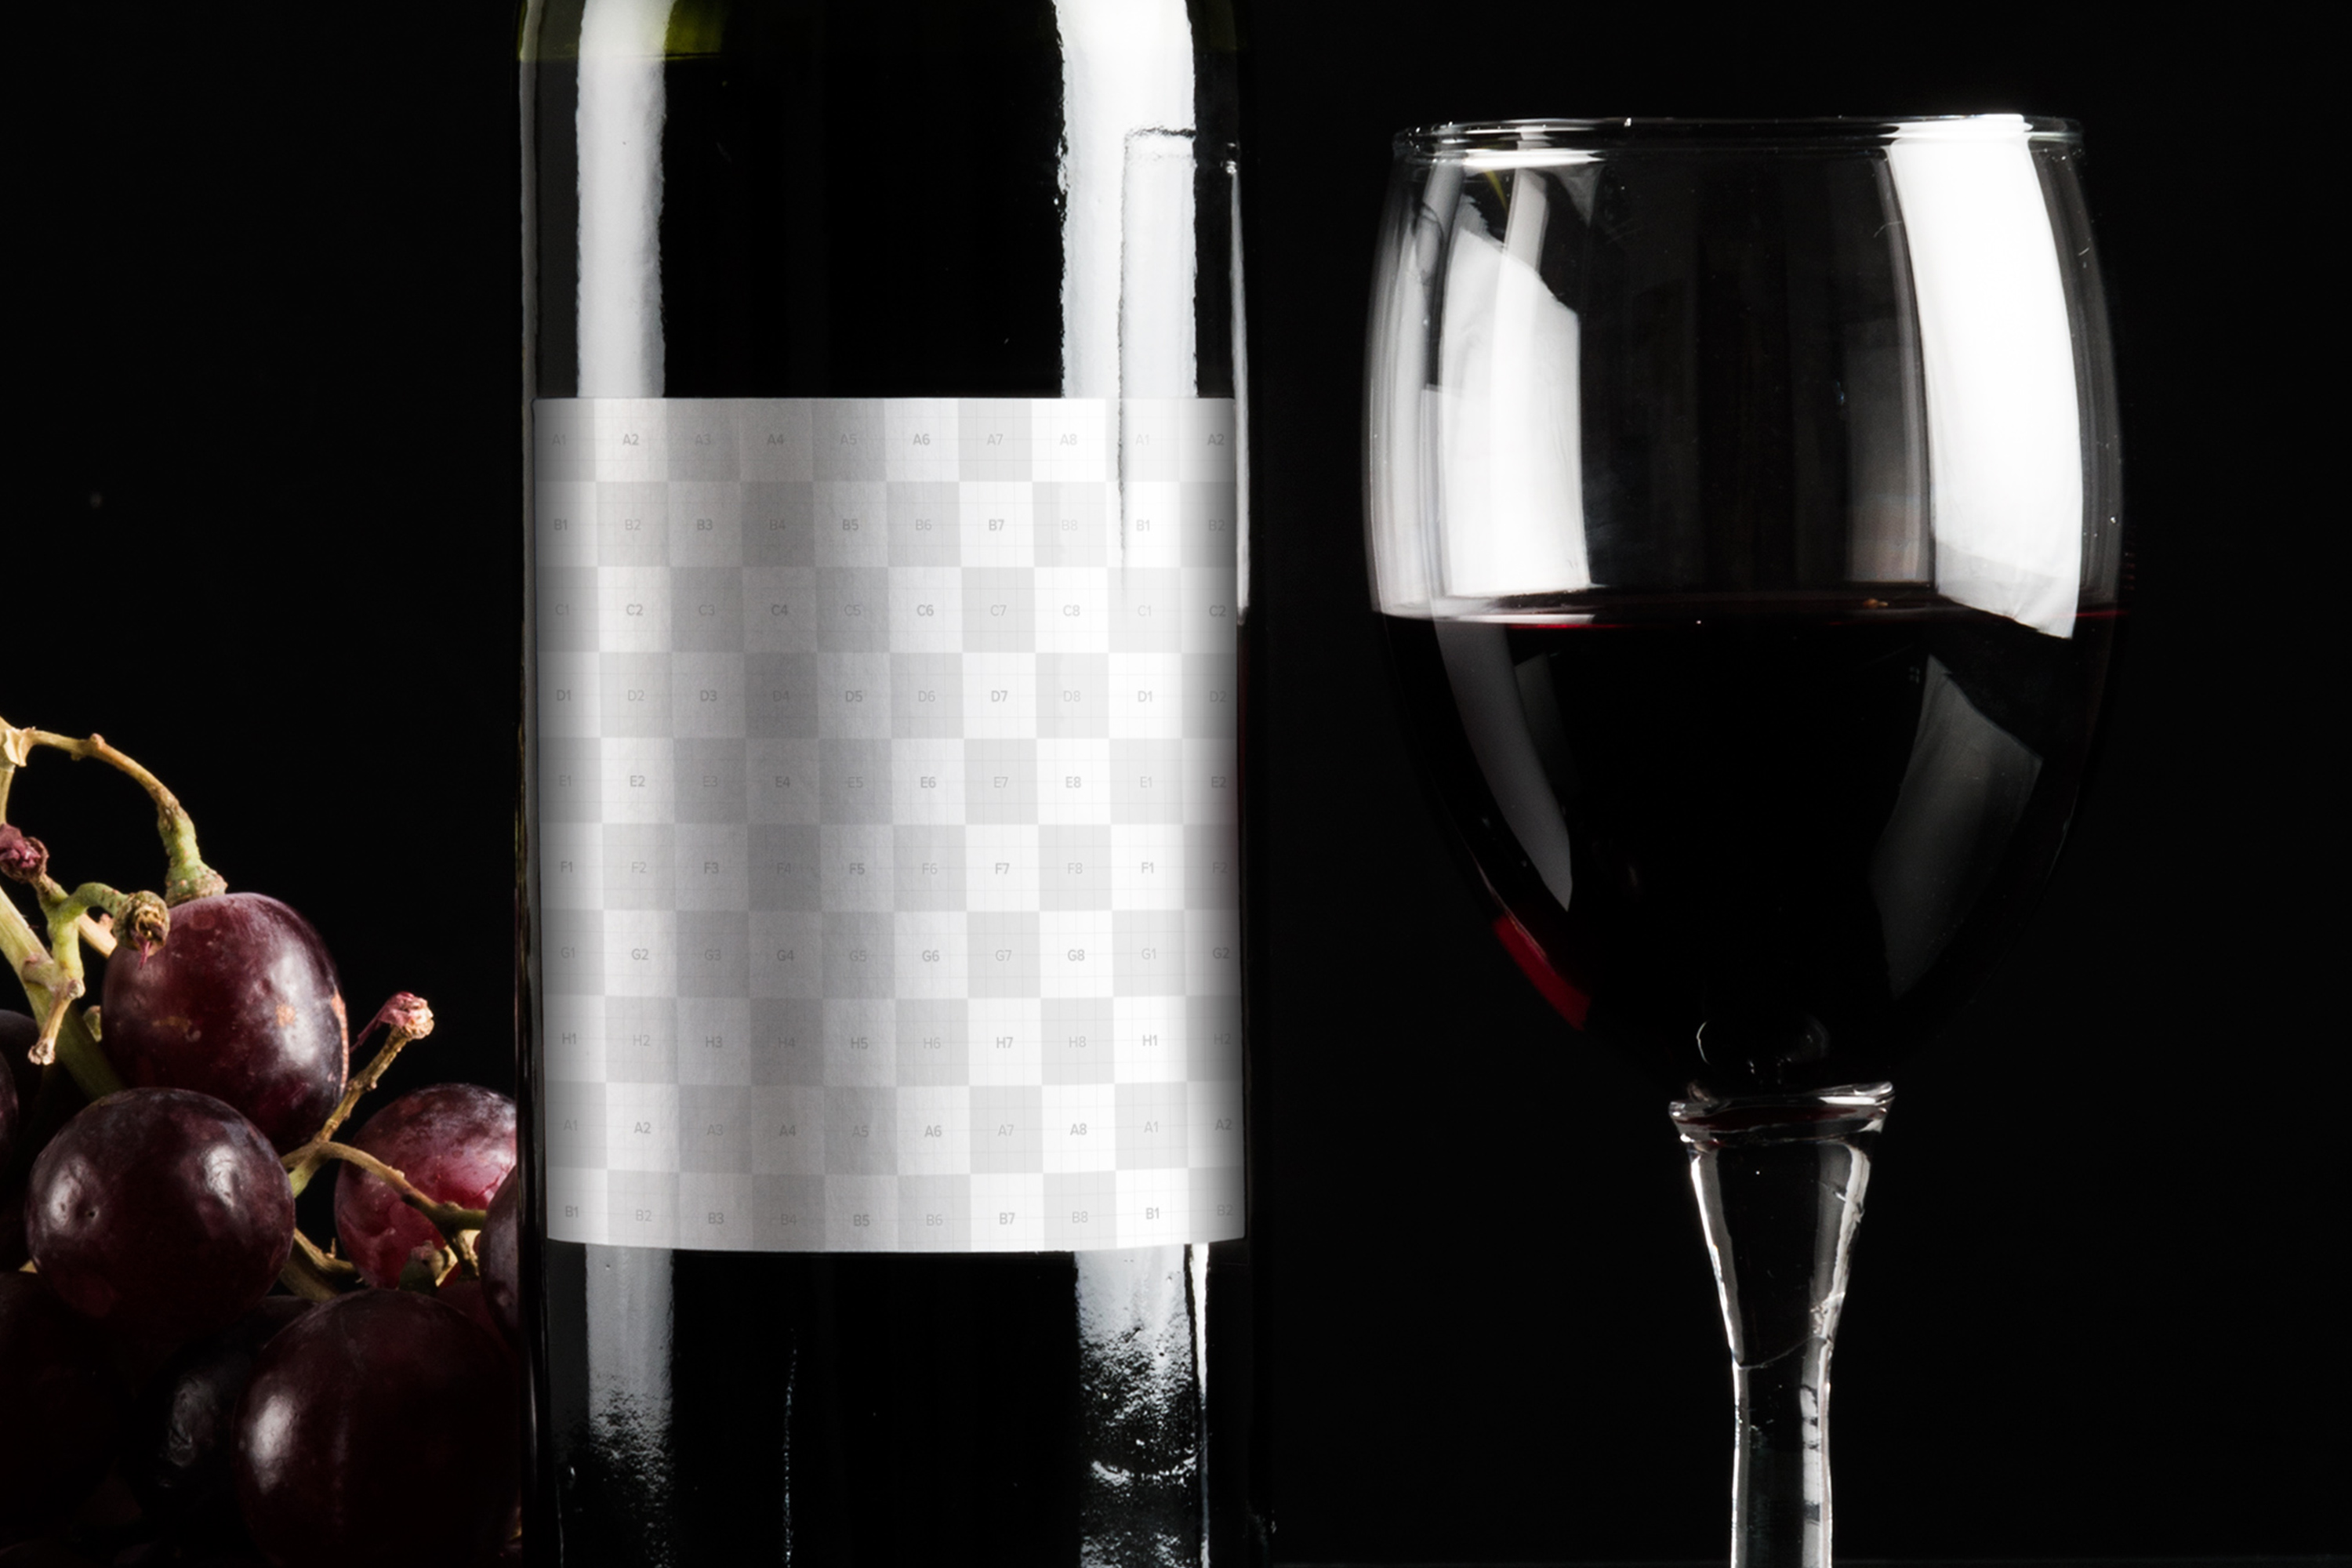 酒类商标设计图预览酒瓶样机模板06 Wine Bottle Mockup 06插图2